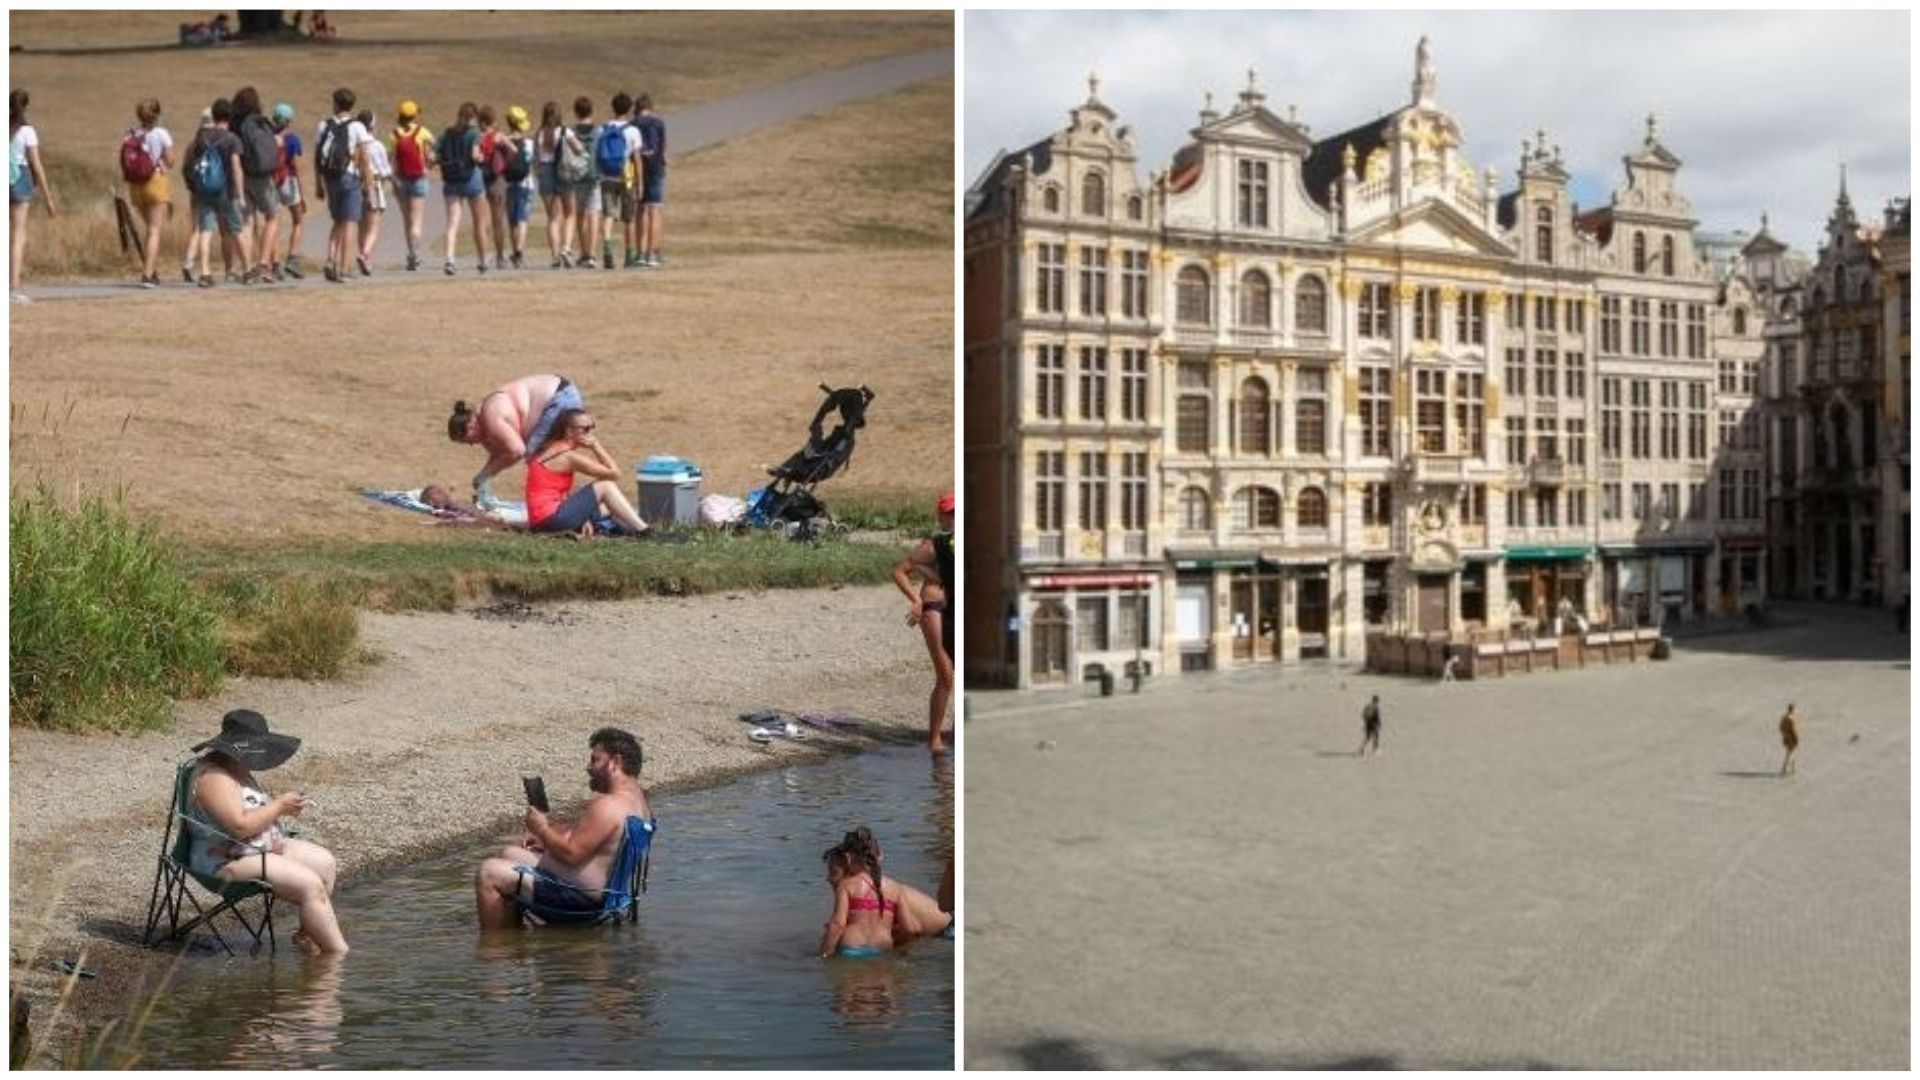 Bilan touristique de cet été 2020 sous Covid: la Wallonie a séduit, Bruxelles a subi